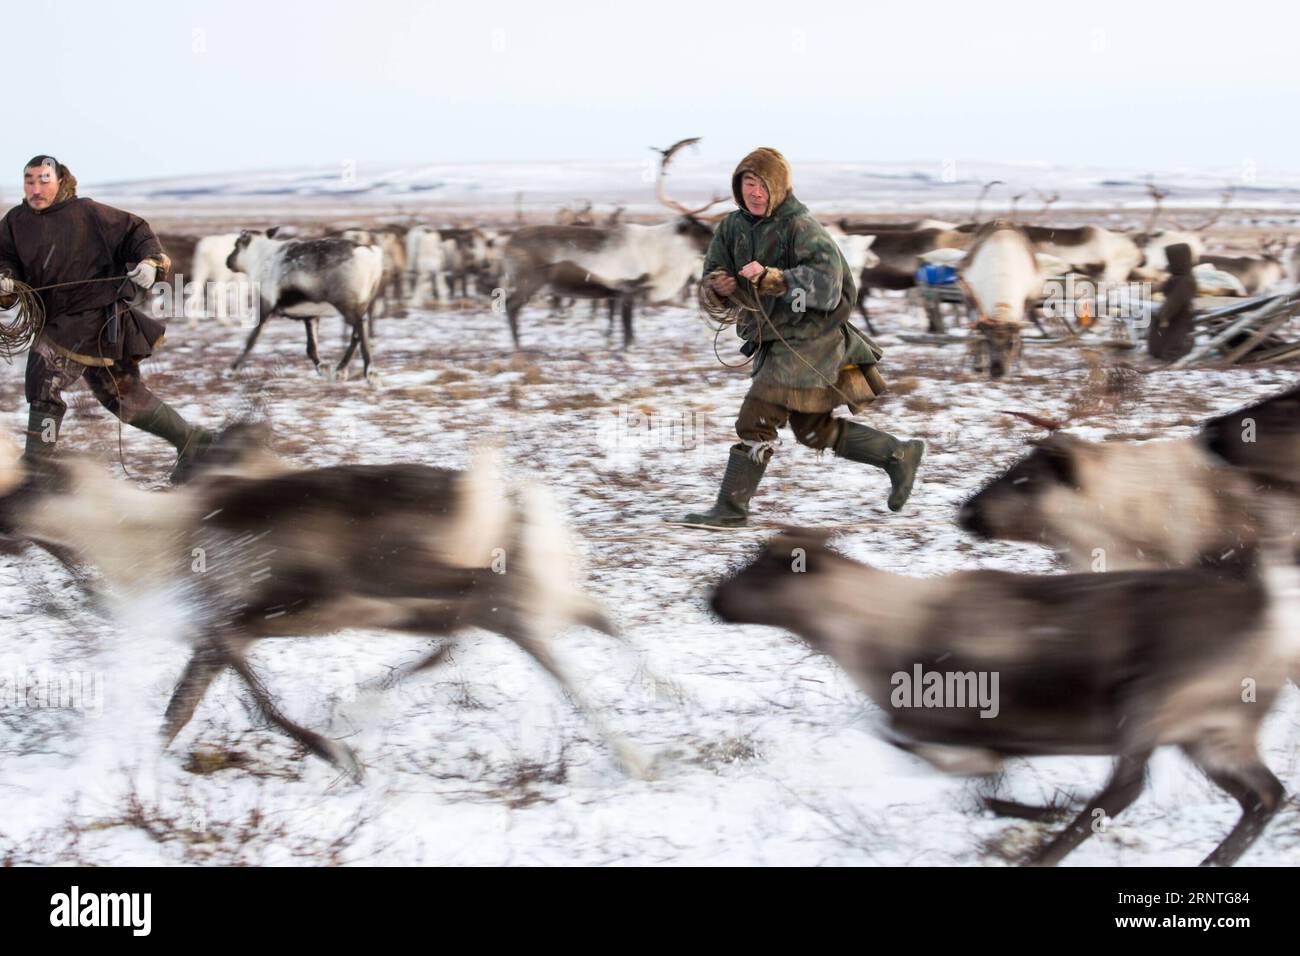 (171109) -- SALEKHARD (RUSSLAND), 9. November 2017 -- Nenets Männer halten Rentiere in seinem Familienlager, etwa 200 km von Salekhard, Russland, am 4. November 2017. Die Nenets sind ein indigenes Volk im nördlichen arktischen Russland. Nach der jüngsten Volkszählung im Jahr 2010 gibt es in der Russischen Föderation etwa 45.000 Nenzen, die meisten von ihnen leben im autonomen Okrug der Yamalo-Nenzen und im autonomen Okrug der Nenzen. (whw) RUSSIA-SALEKHARD-DAILY LIFE-NENETS BaixXueqi PUBLICATIONxNOTxINxCHN Stockfoto